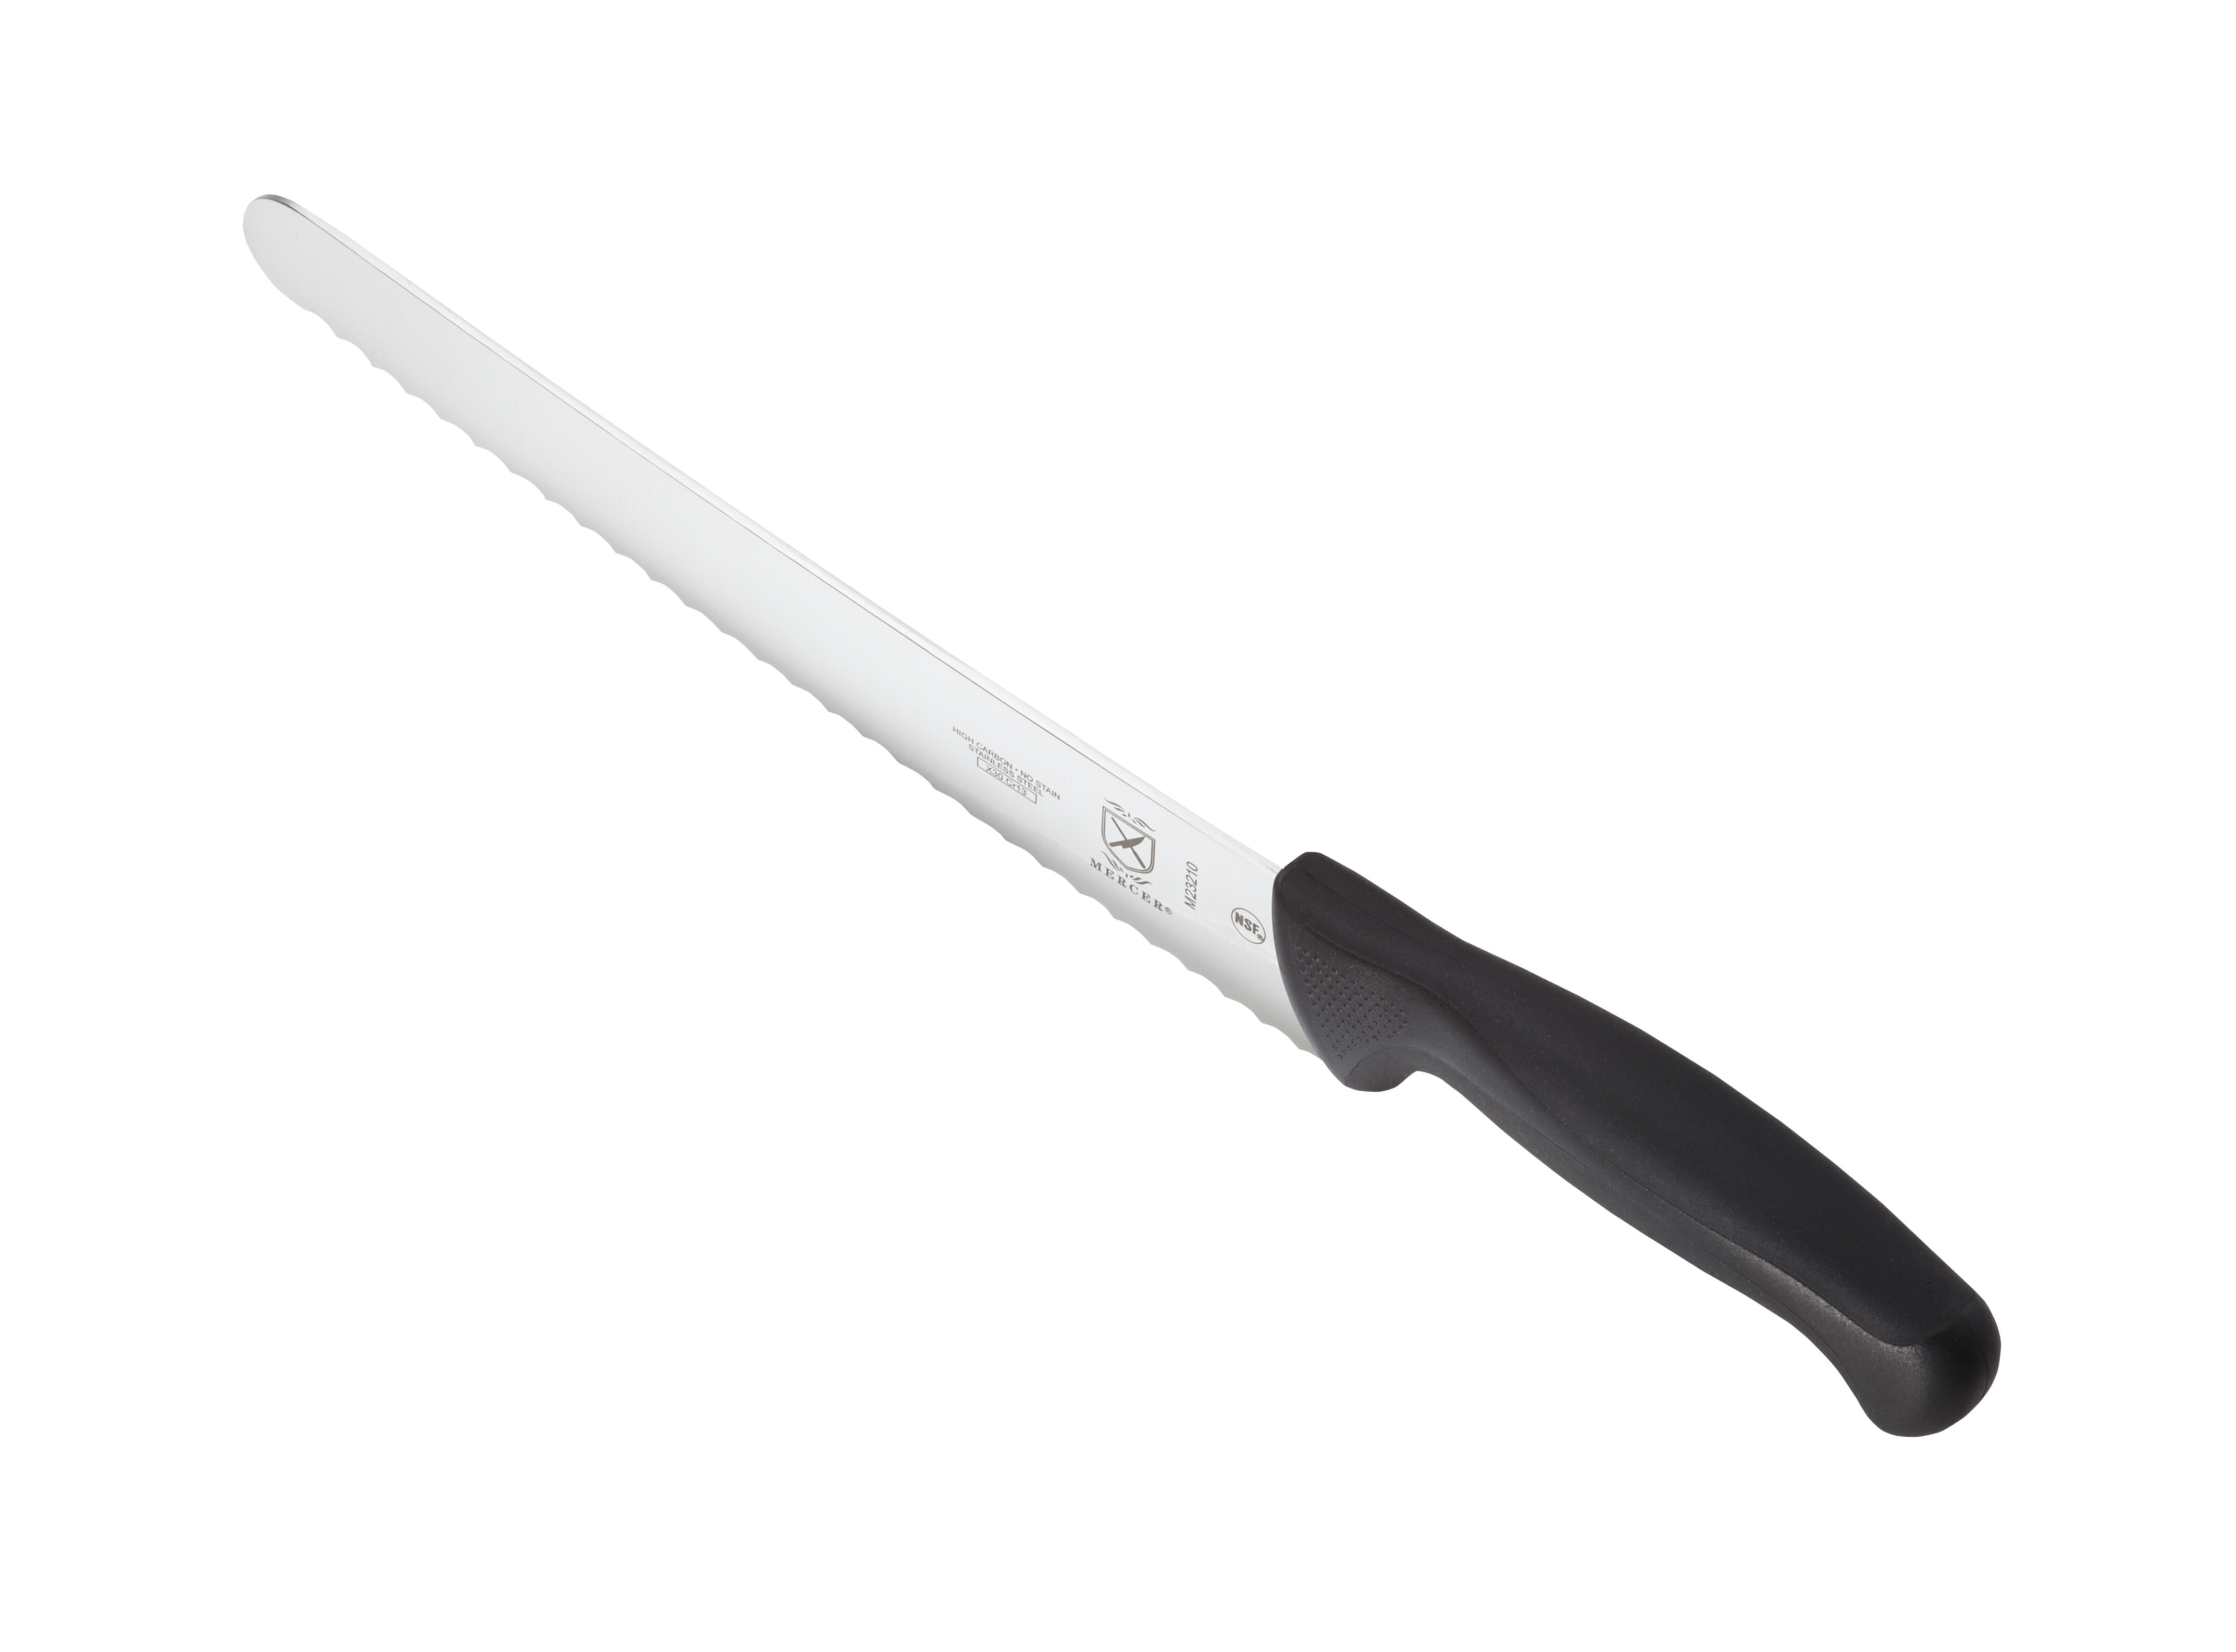 Mercer Cutlery Millennia 8 Piece Stainless Steel Assorted Knife Set &  Reviews